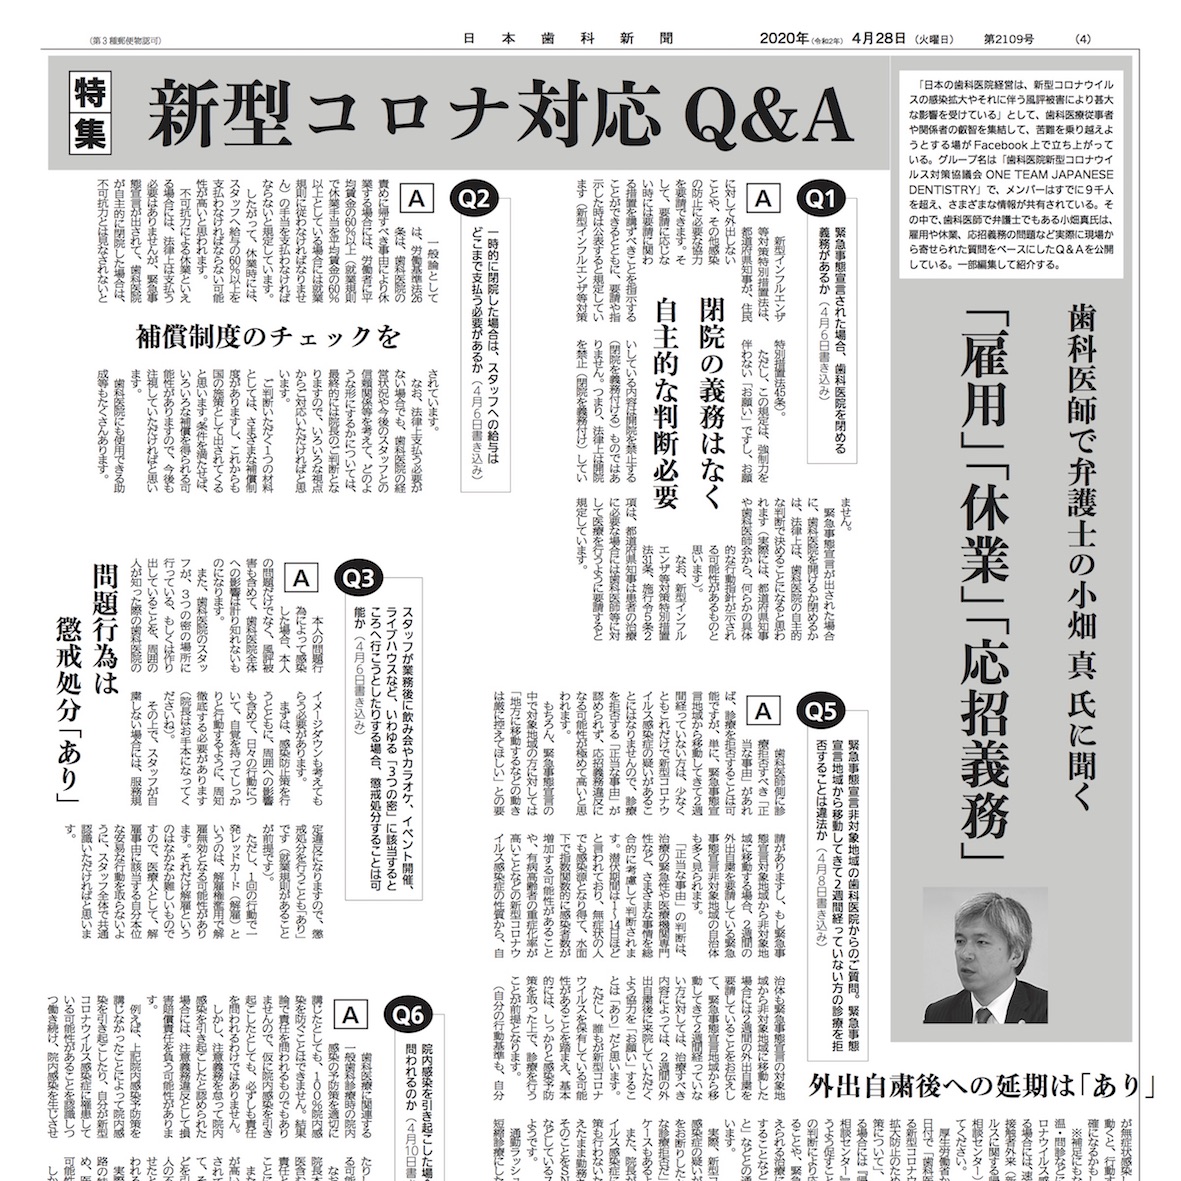 日本歯科新聞（2020年4月28日付：2109号）にて新型コロナ対応Q&Aと題する特集記事が掲載されました。